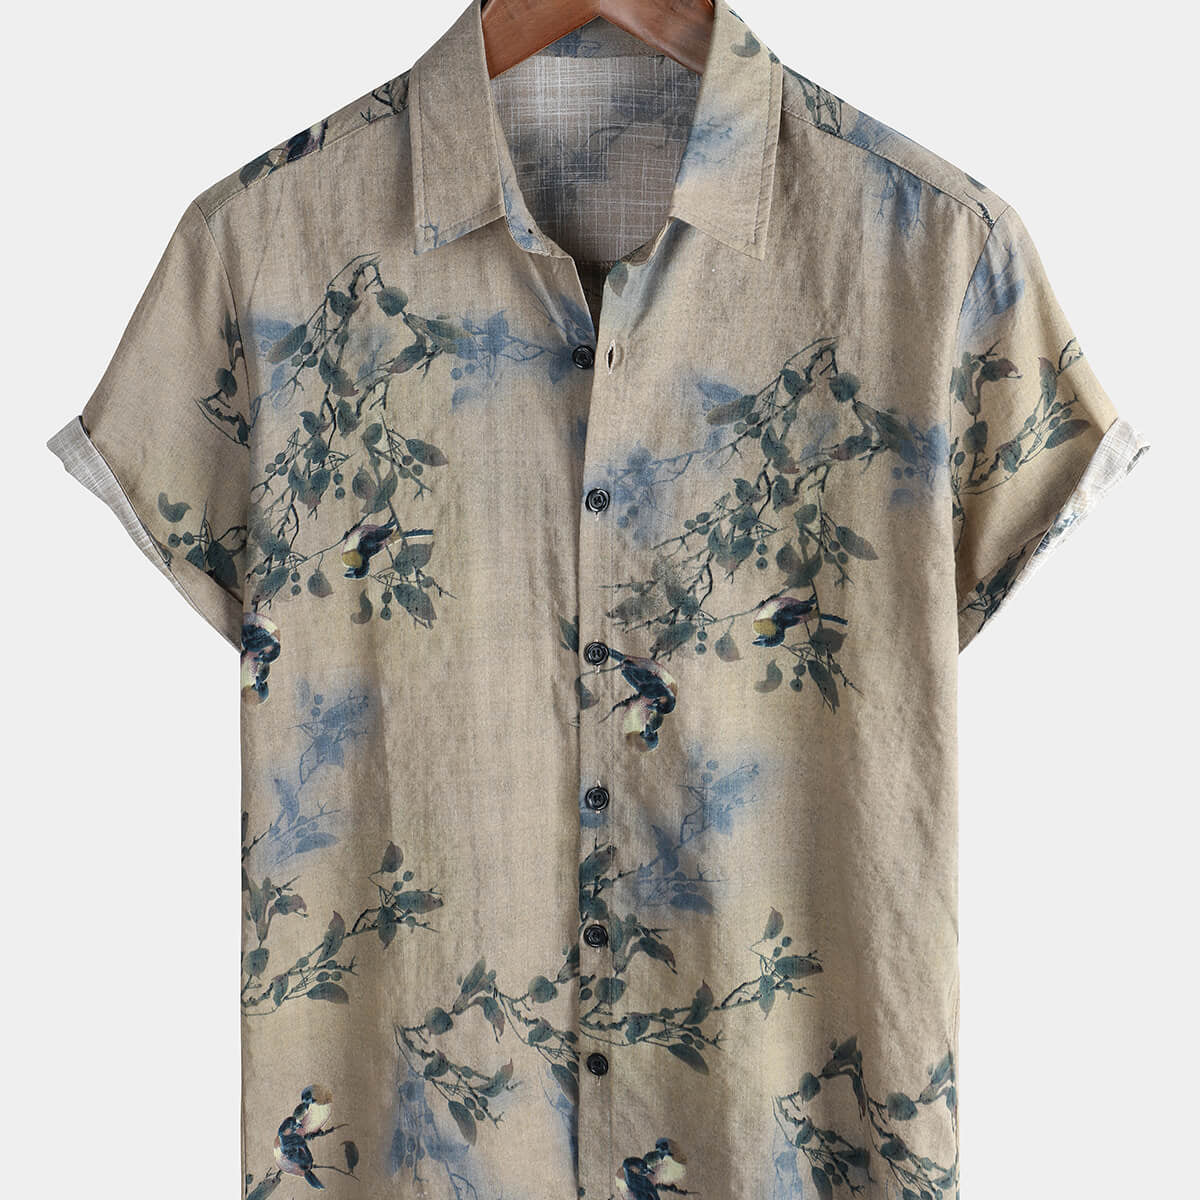 Chemise boutonnée à manches courtes pour hommes, Vintage, gris, Floral, vacances, été, décontracté